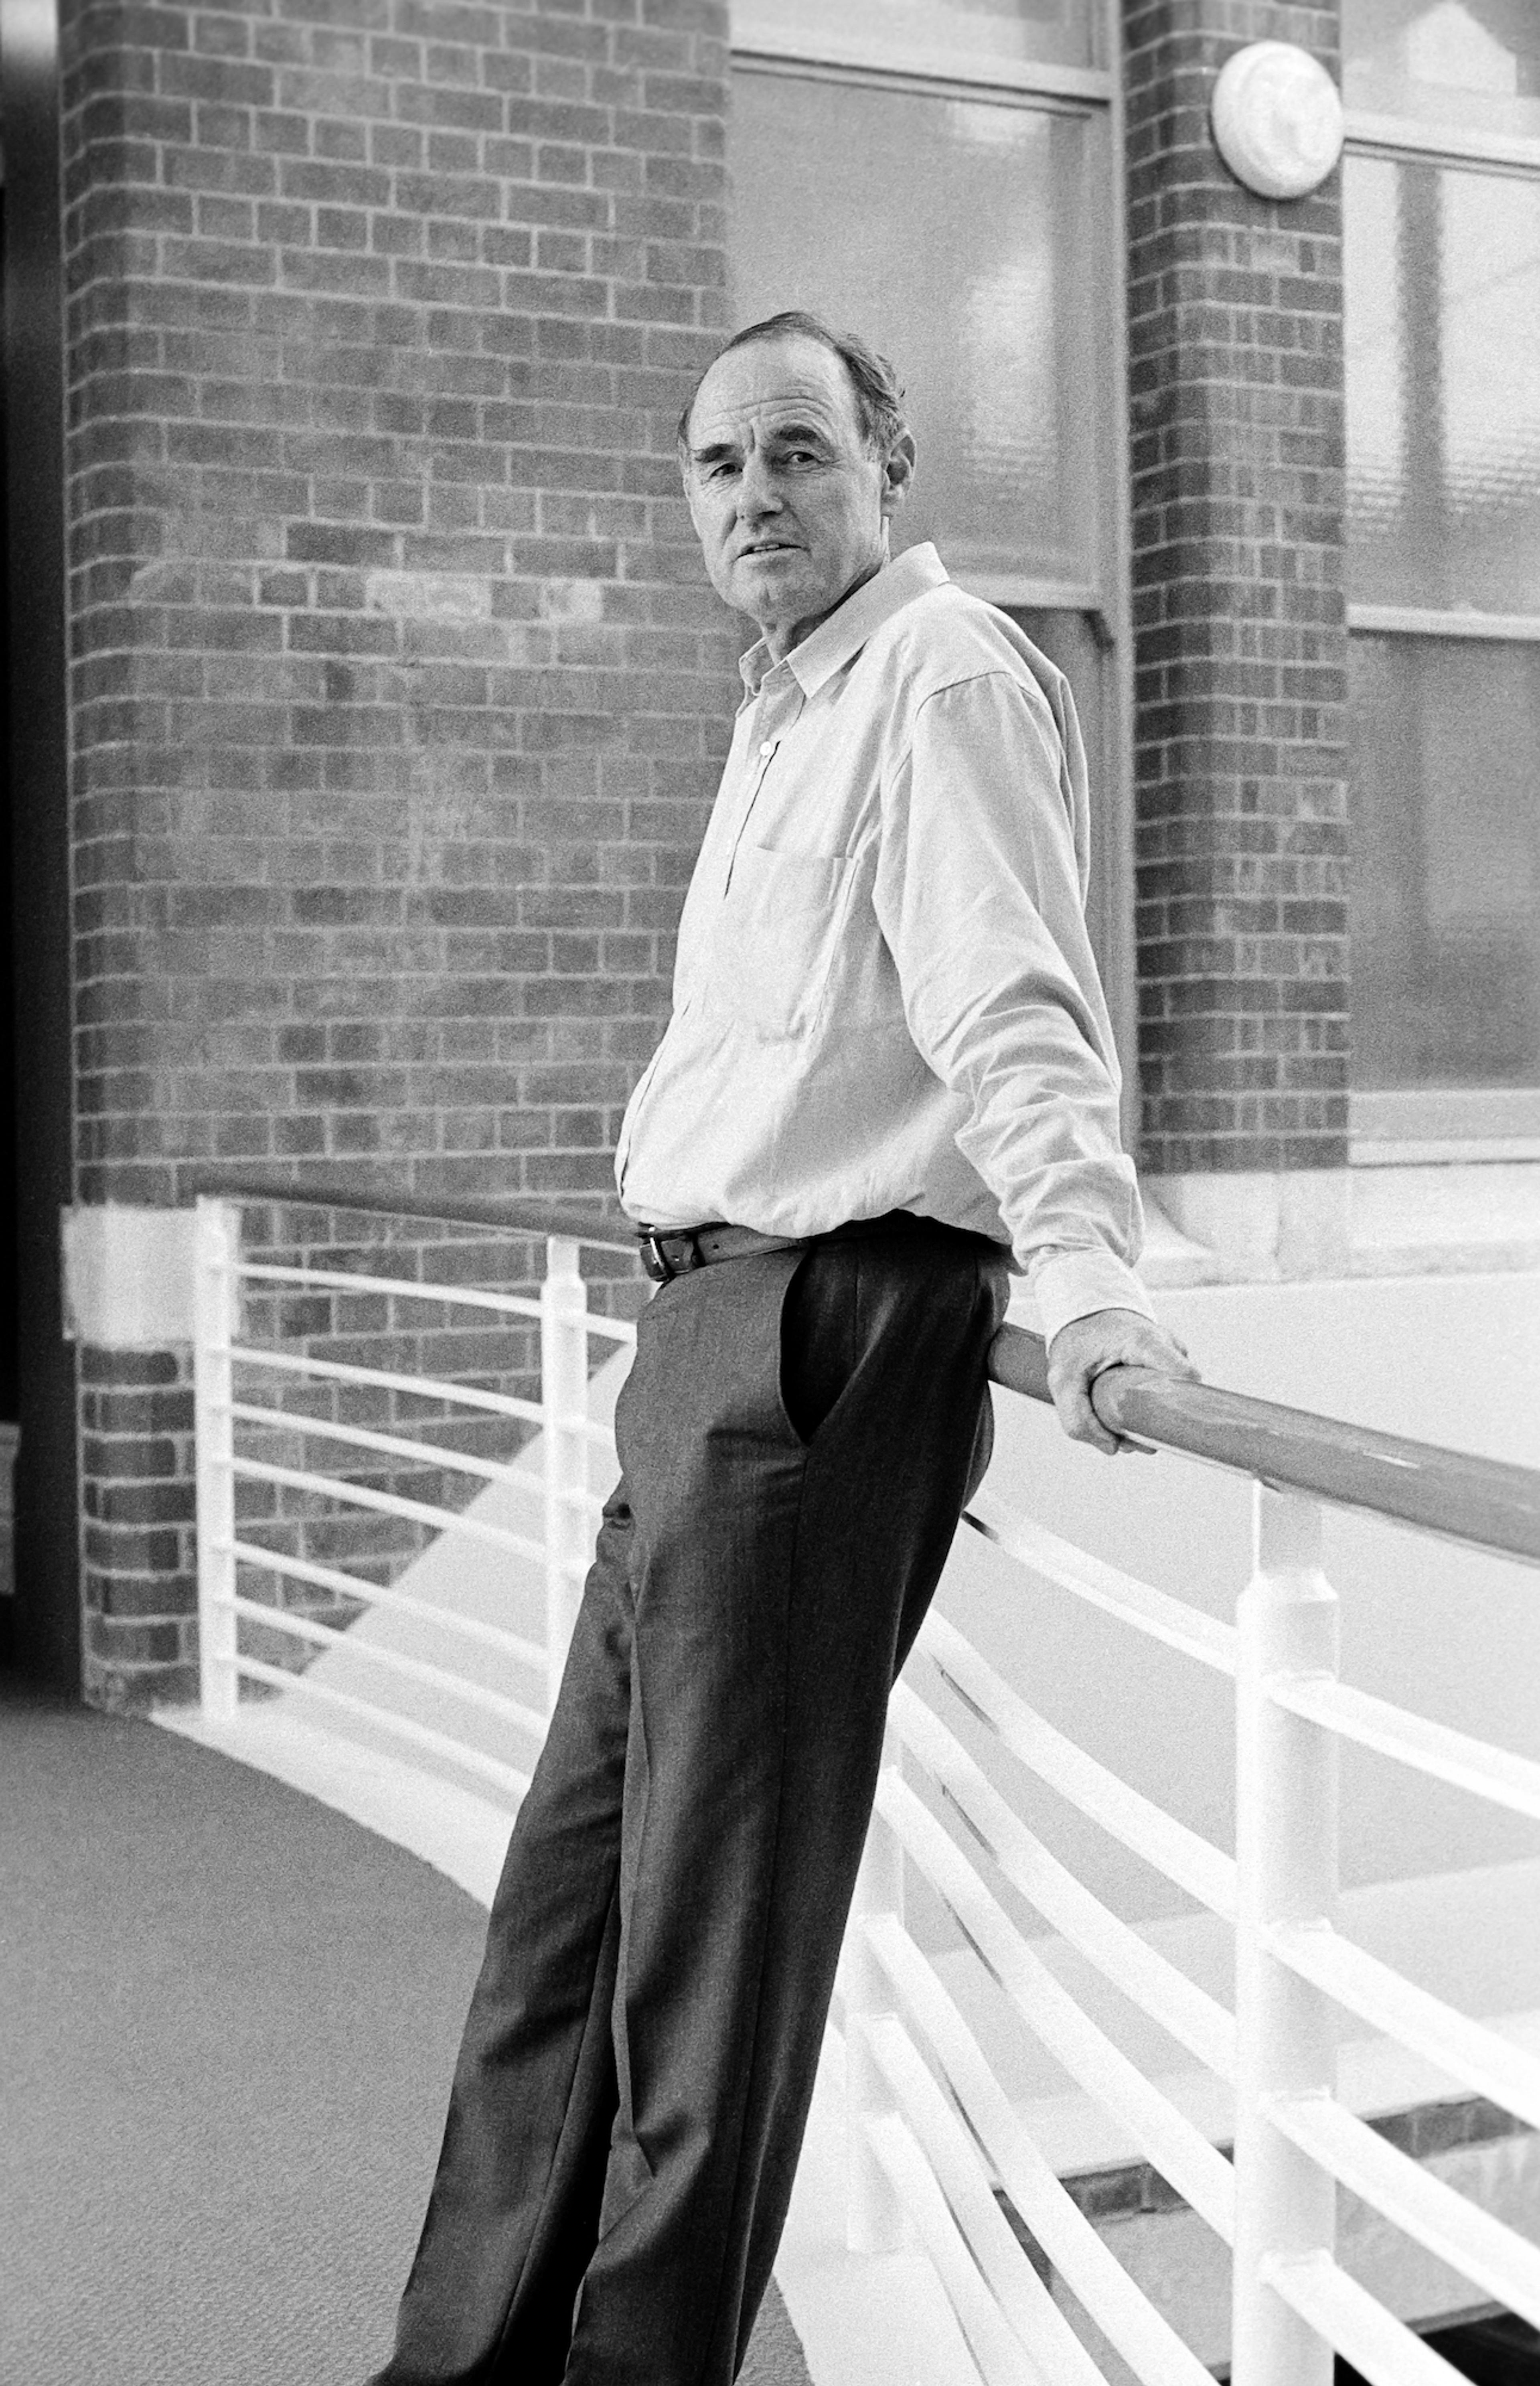 Tim Beaglehole, 1996, photograph by Robert Cross